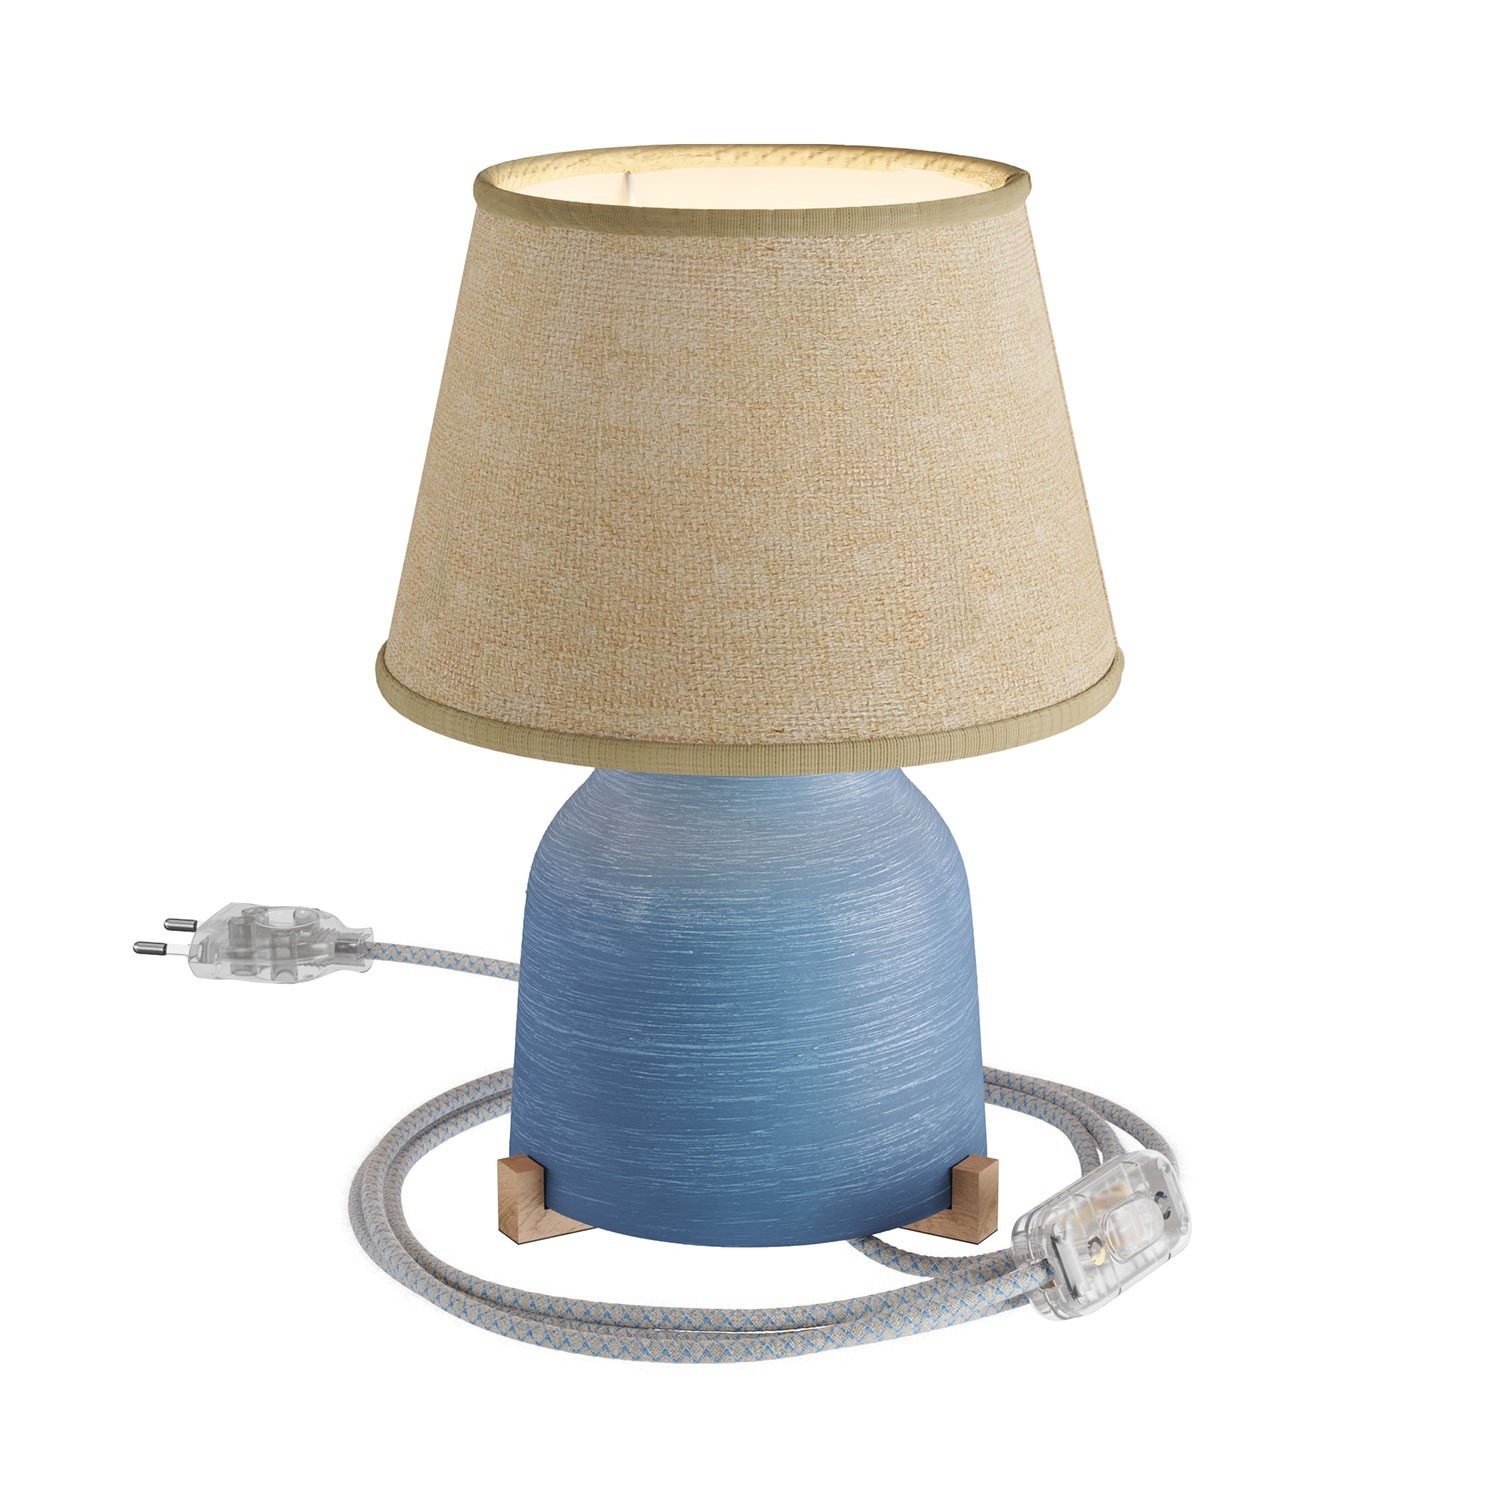 Keramische Vaas-tafellamp met Impero-kap, compleet met strijkijzersnoer, schakelaar en tweepolige stekker